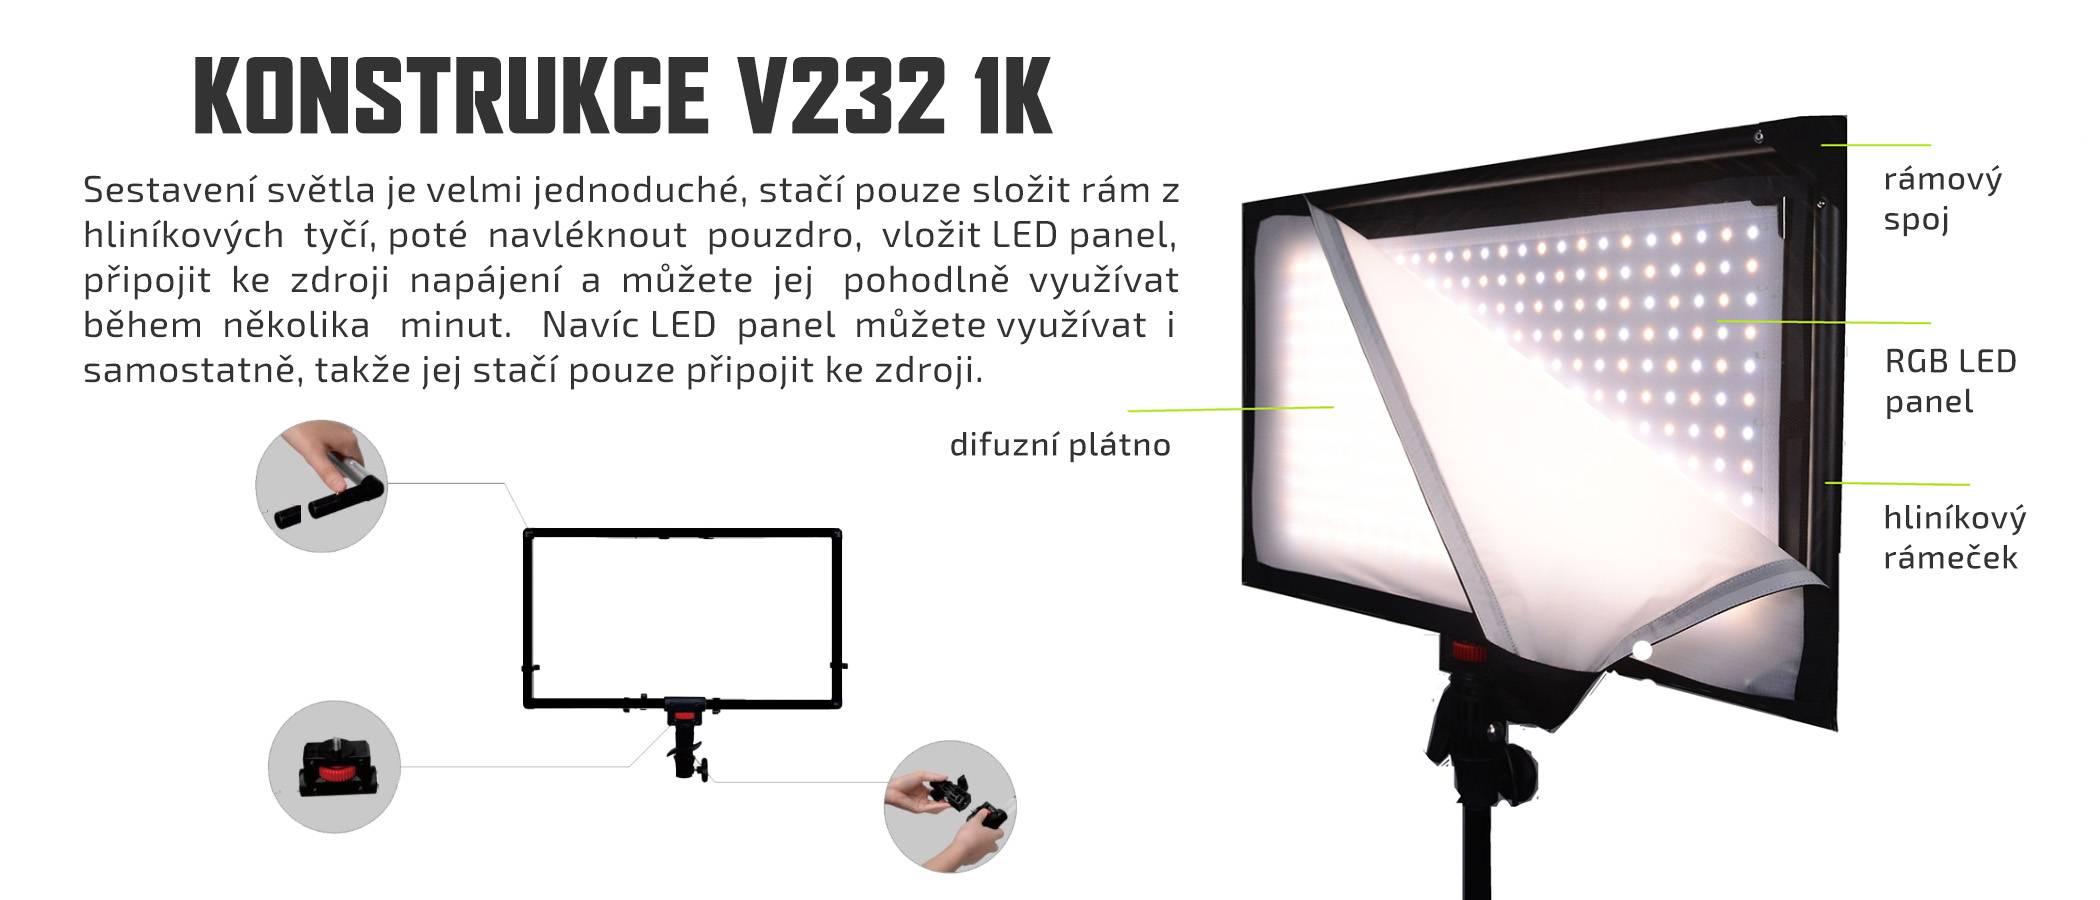 film-technika-ledgo-v2321k1-universální-led-světlo-jenoduchá-konstrukce